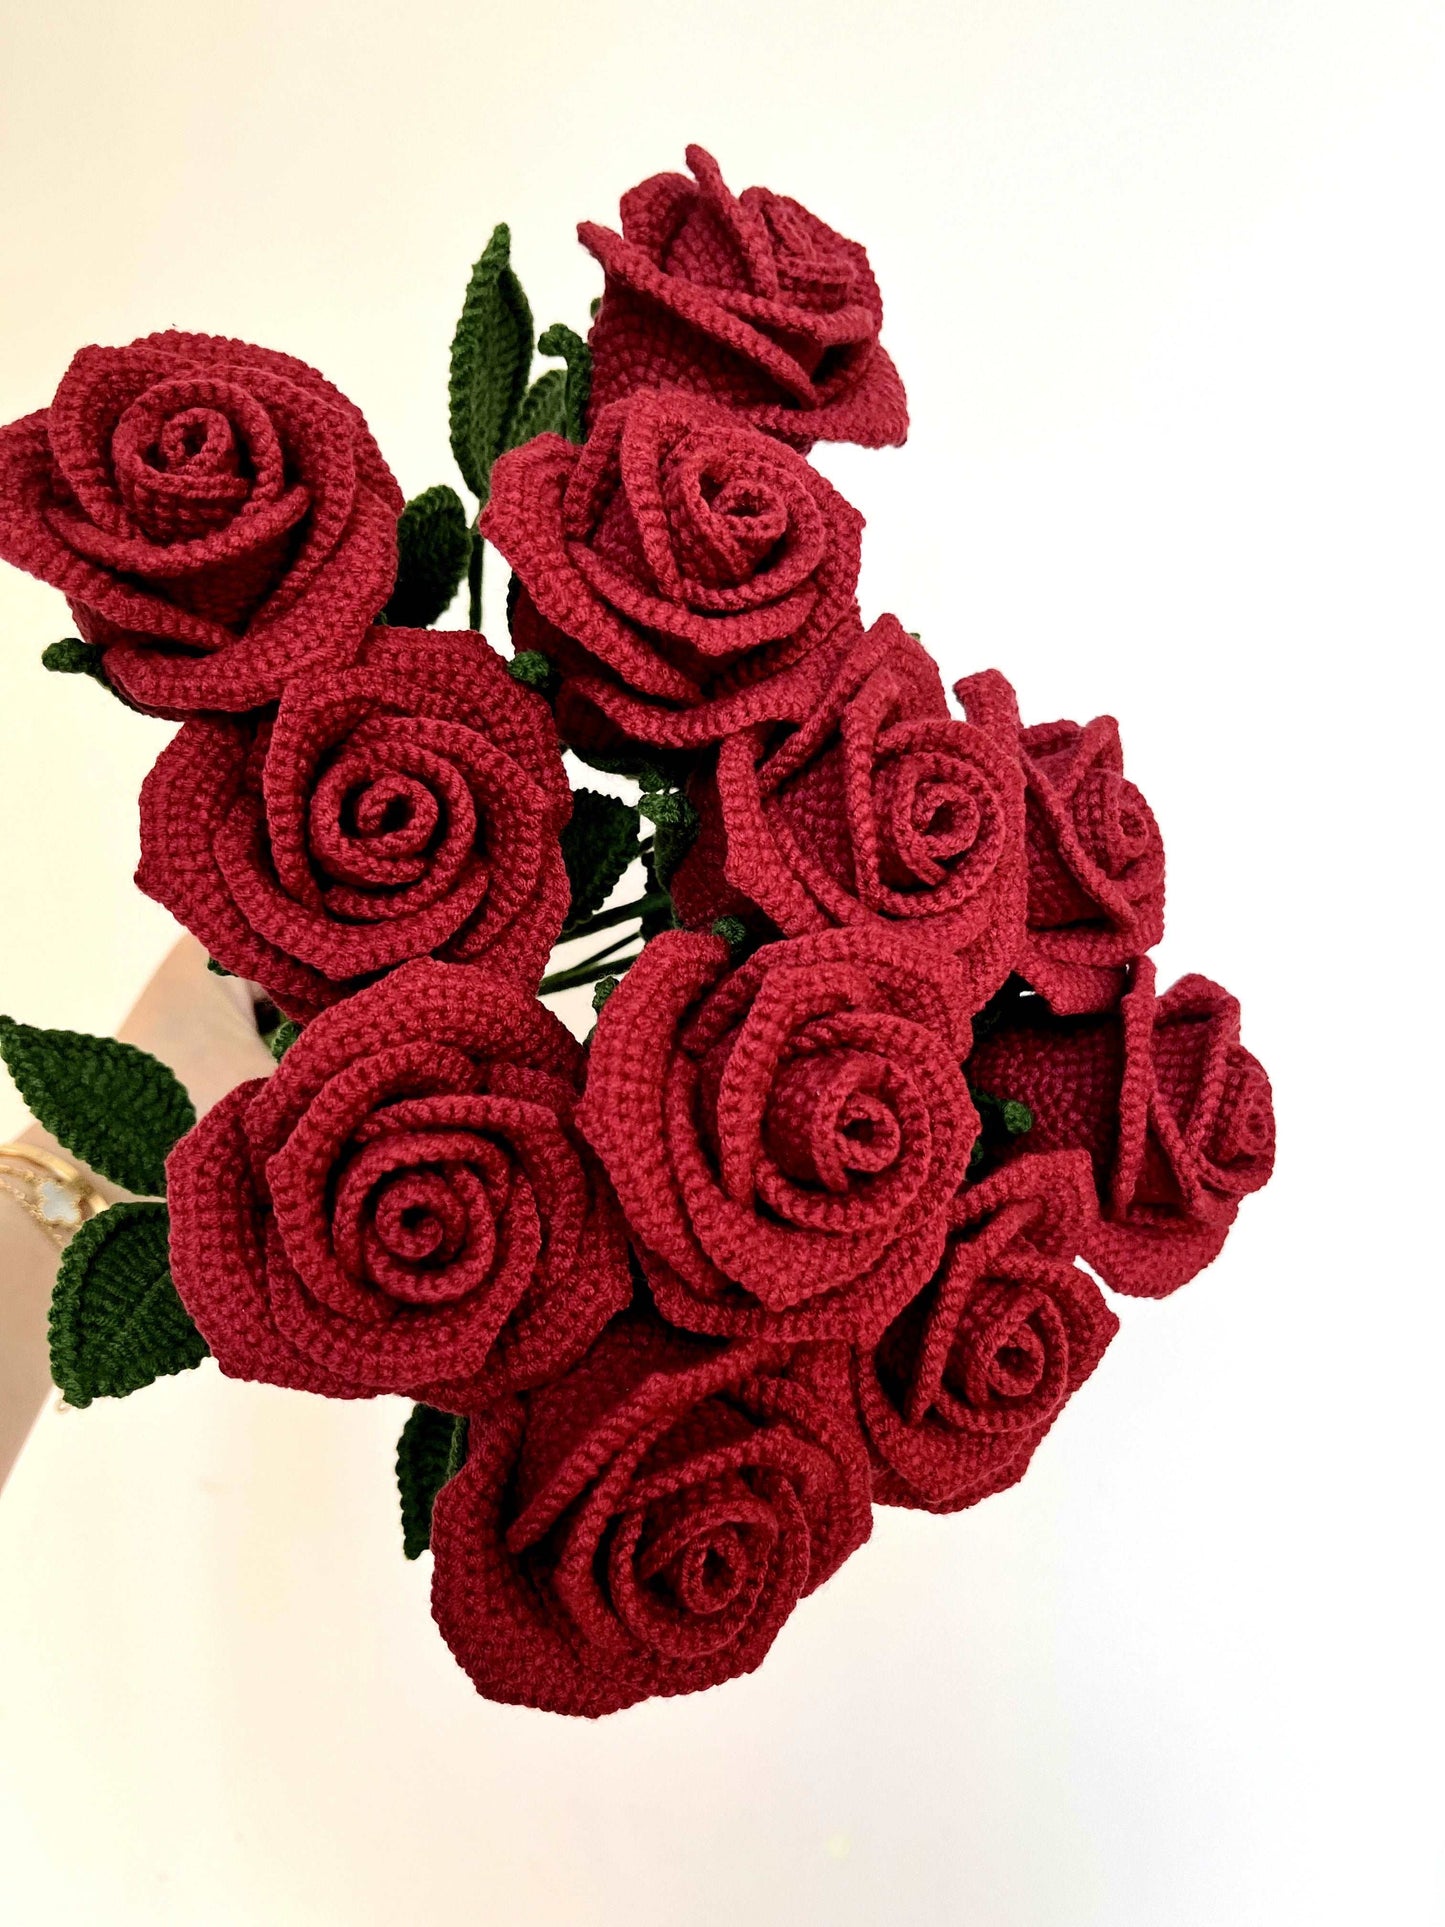 Hand-Knitted Red Rose Flower Arrangement: Stunning Home Decor Idea